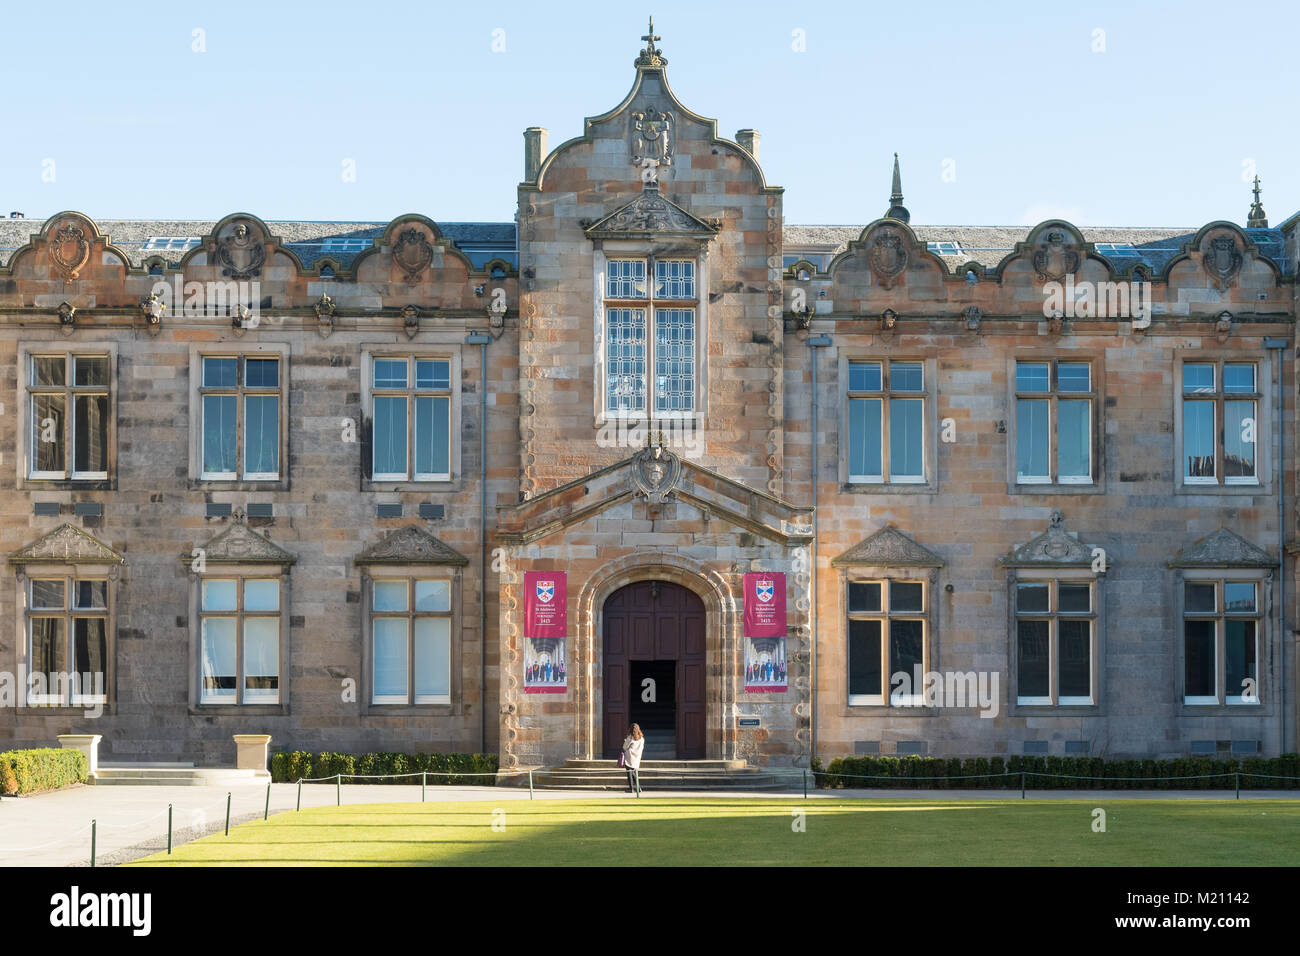 Le Quad, l'Université de St Andrews, St Andrews, Scotland, UK Banque D'Images